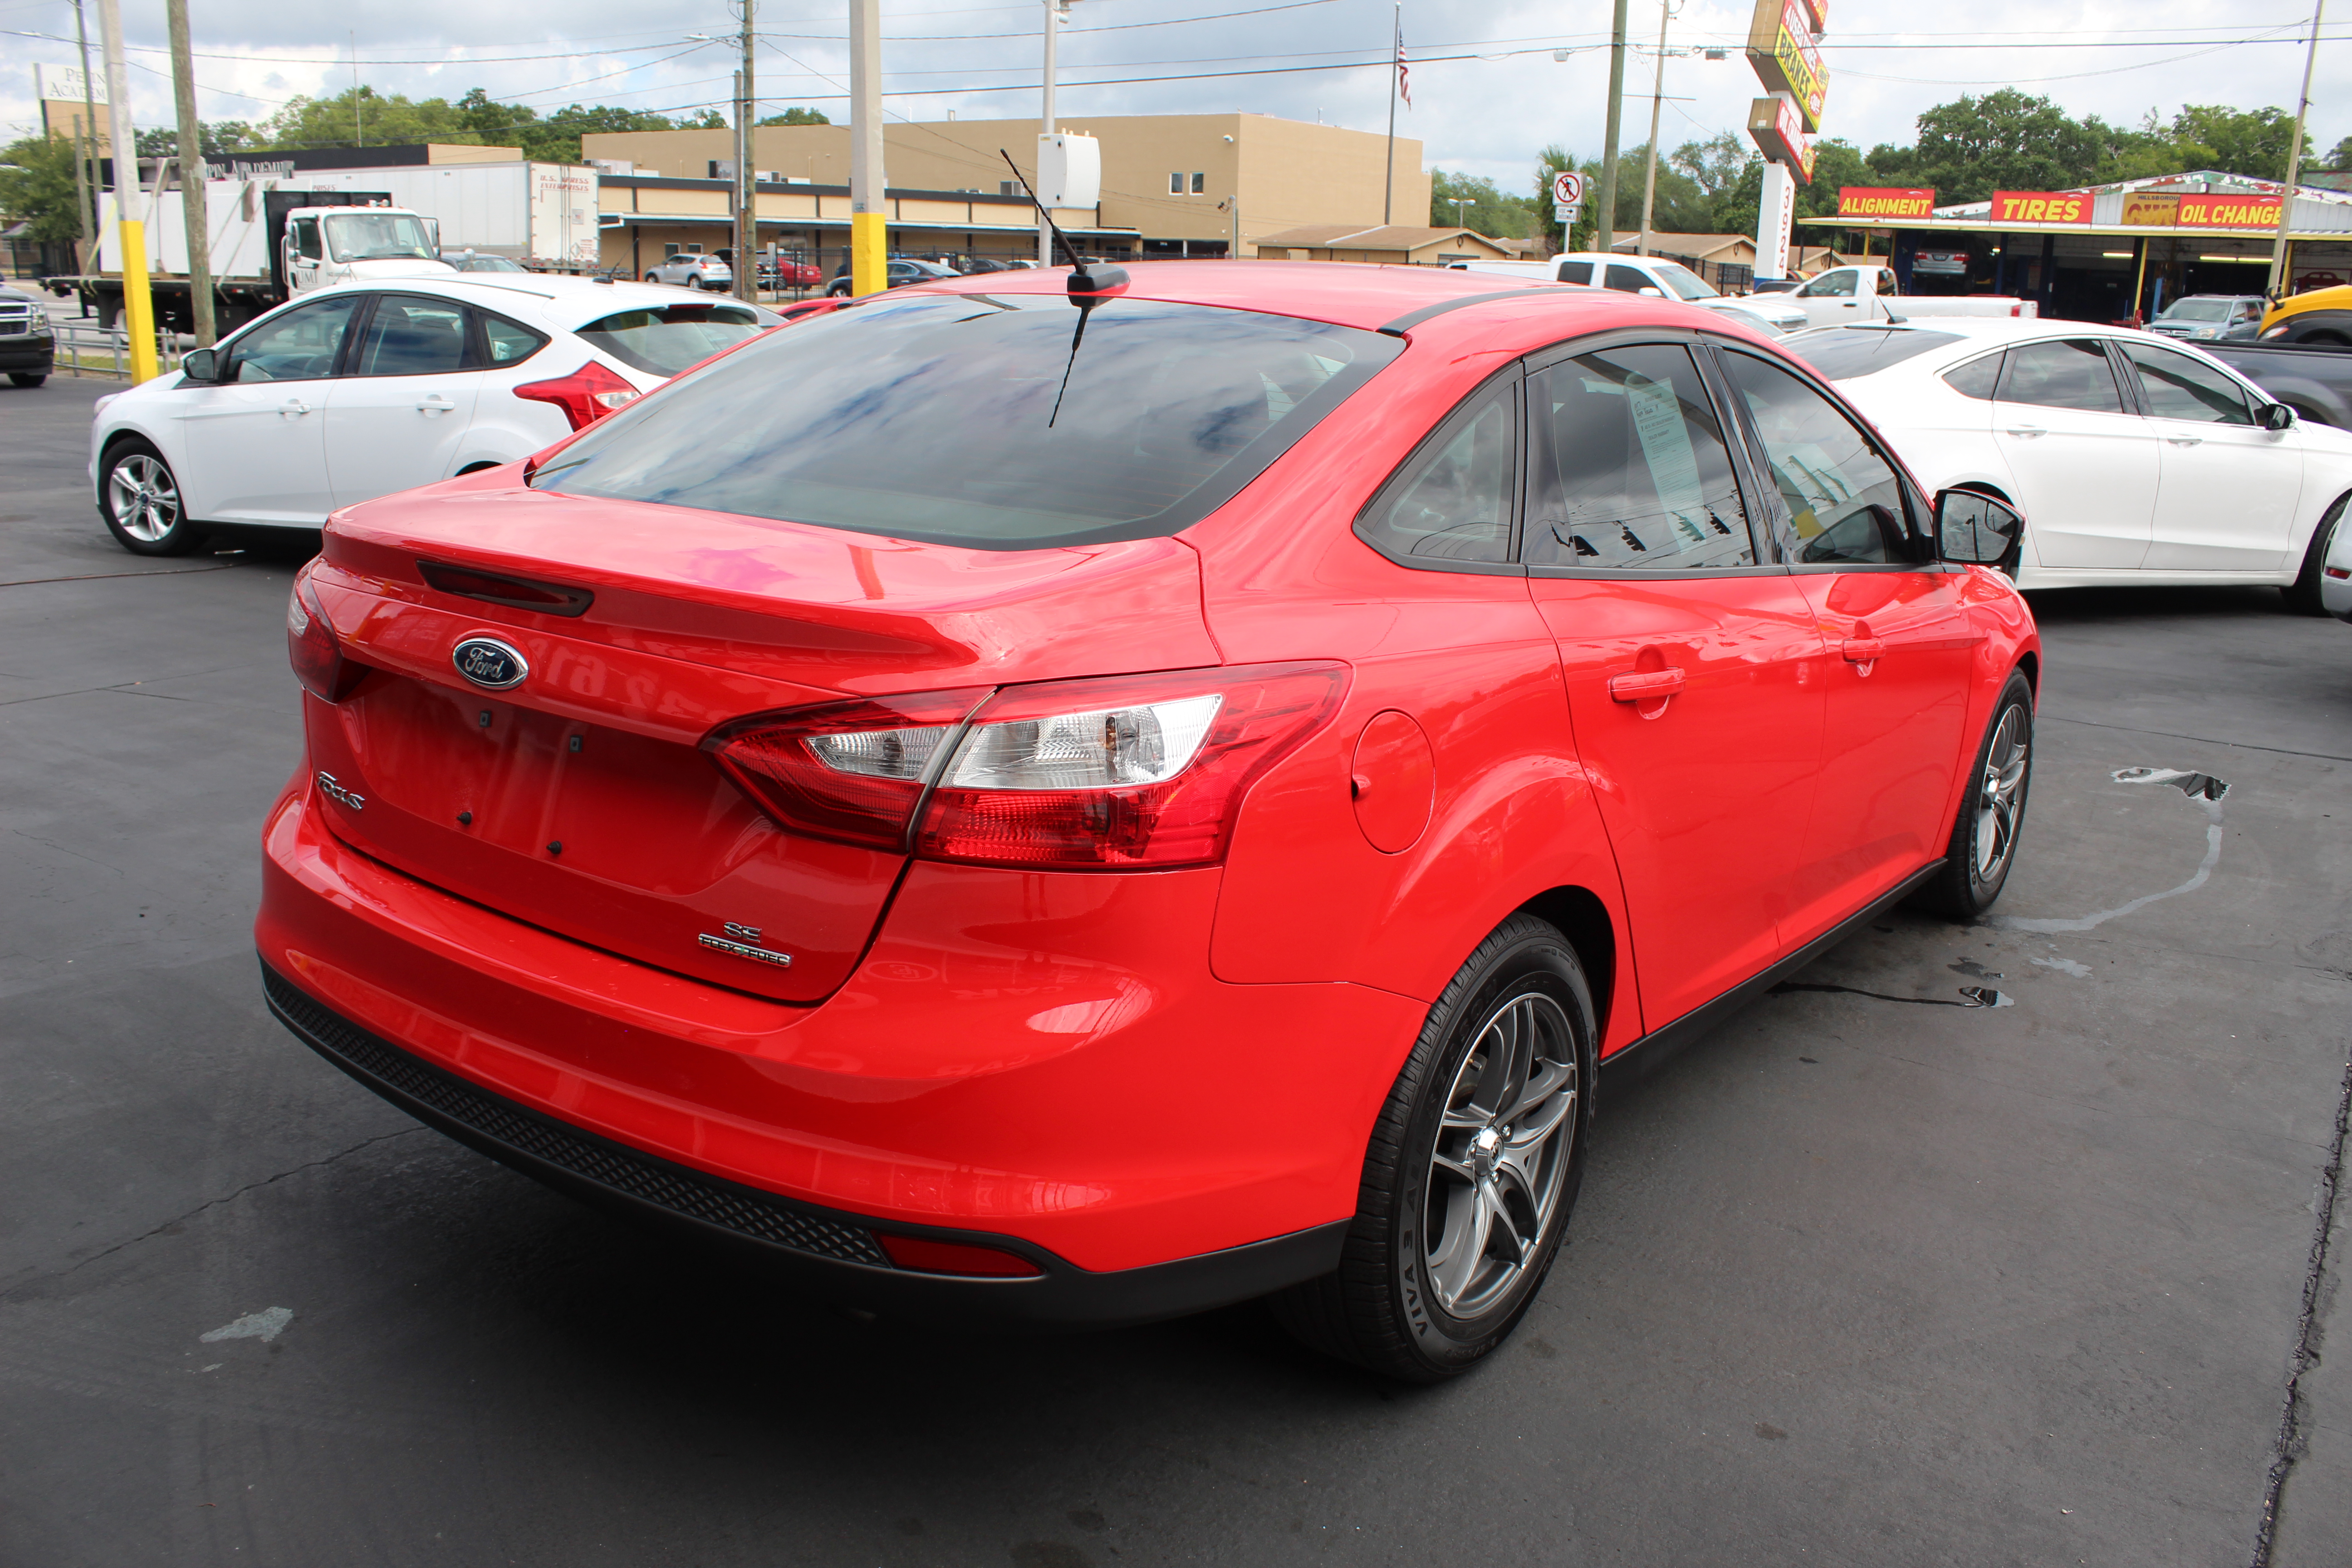 Pre-Owned 2014 Ford Focus SE Sedan 4 Dr. in Tampa #1017 | Car Credit Inc.